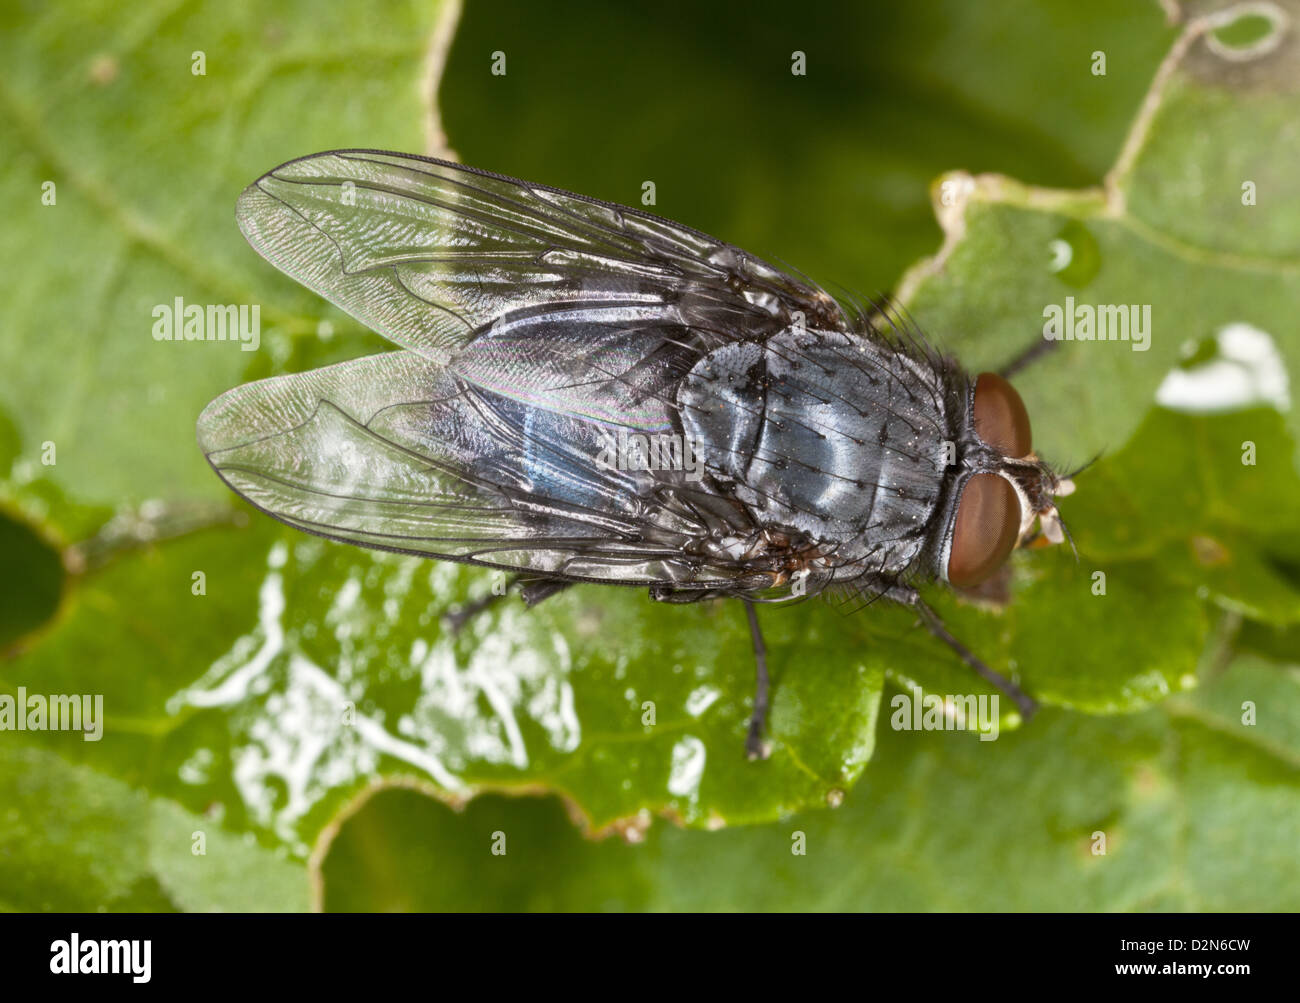 Städtische Zusammenarbeit Schmeißfliege (Hexamerinaufnahme eingespieltes) im Herbst, Blatt, Dorset, England, UK eine der wichtigsten forensische Entomolgy Arten. Stockfoto